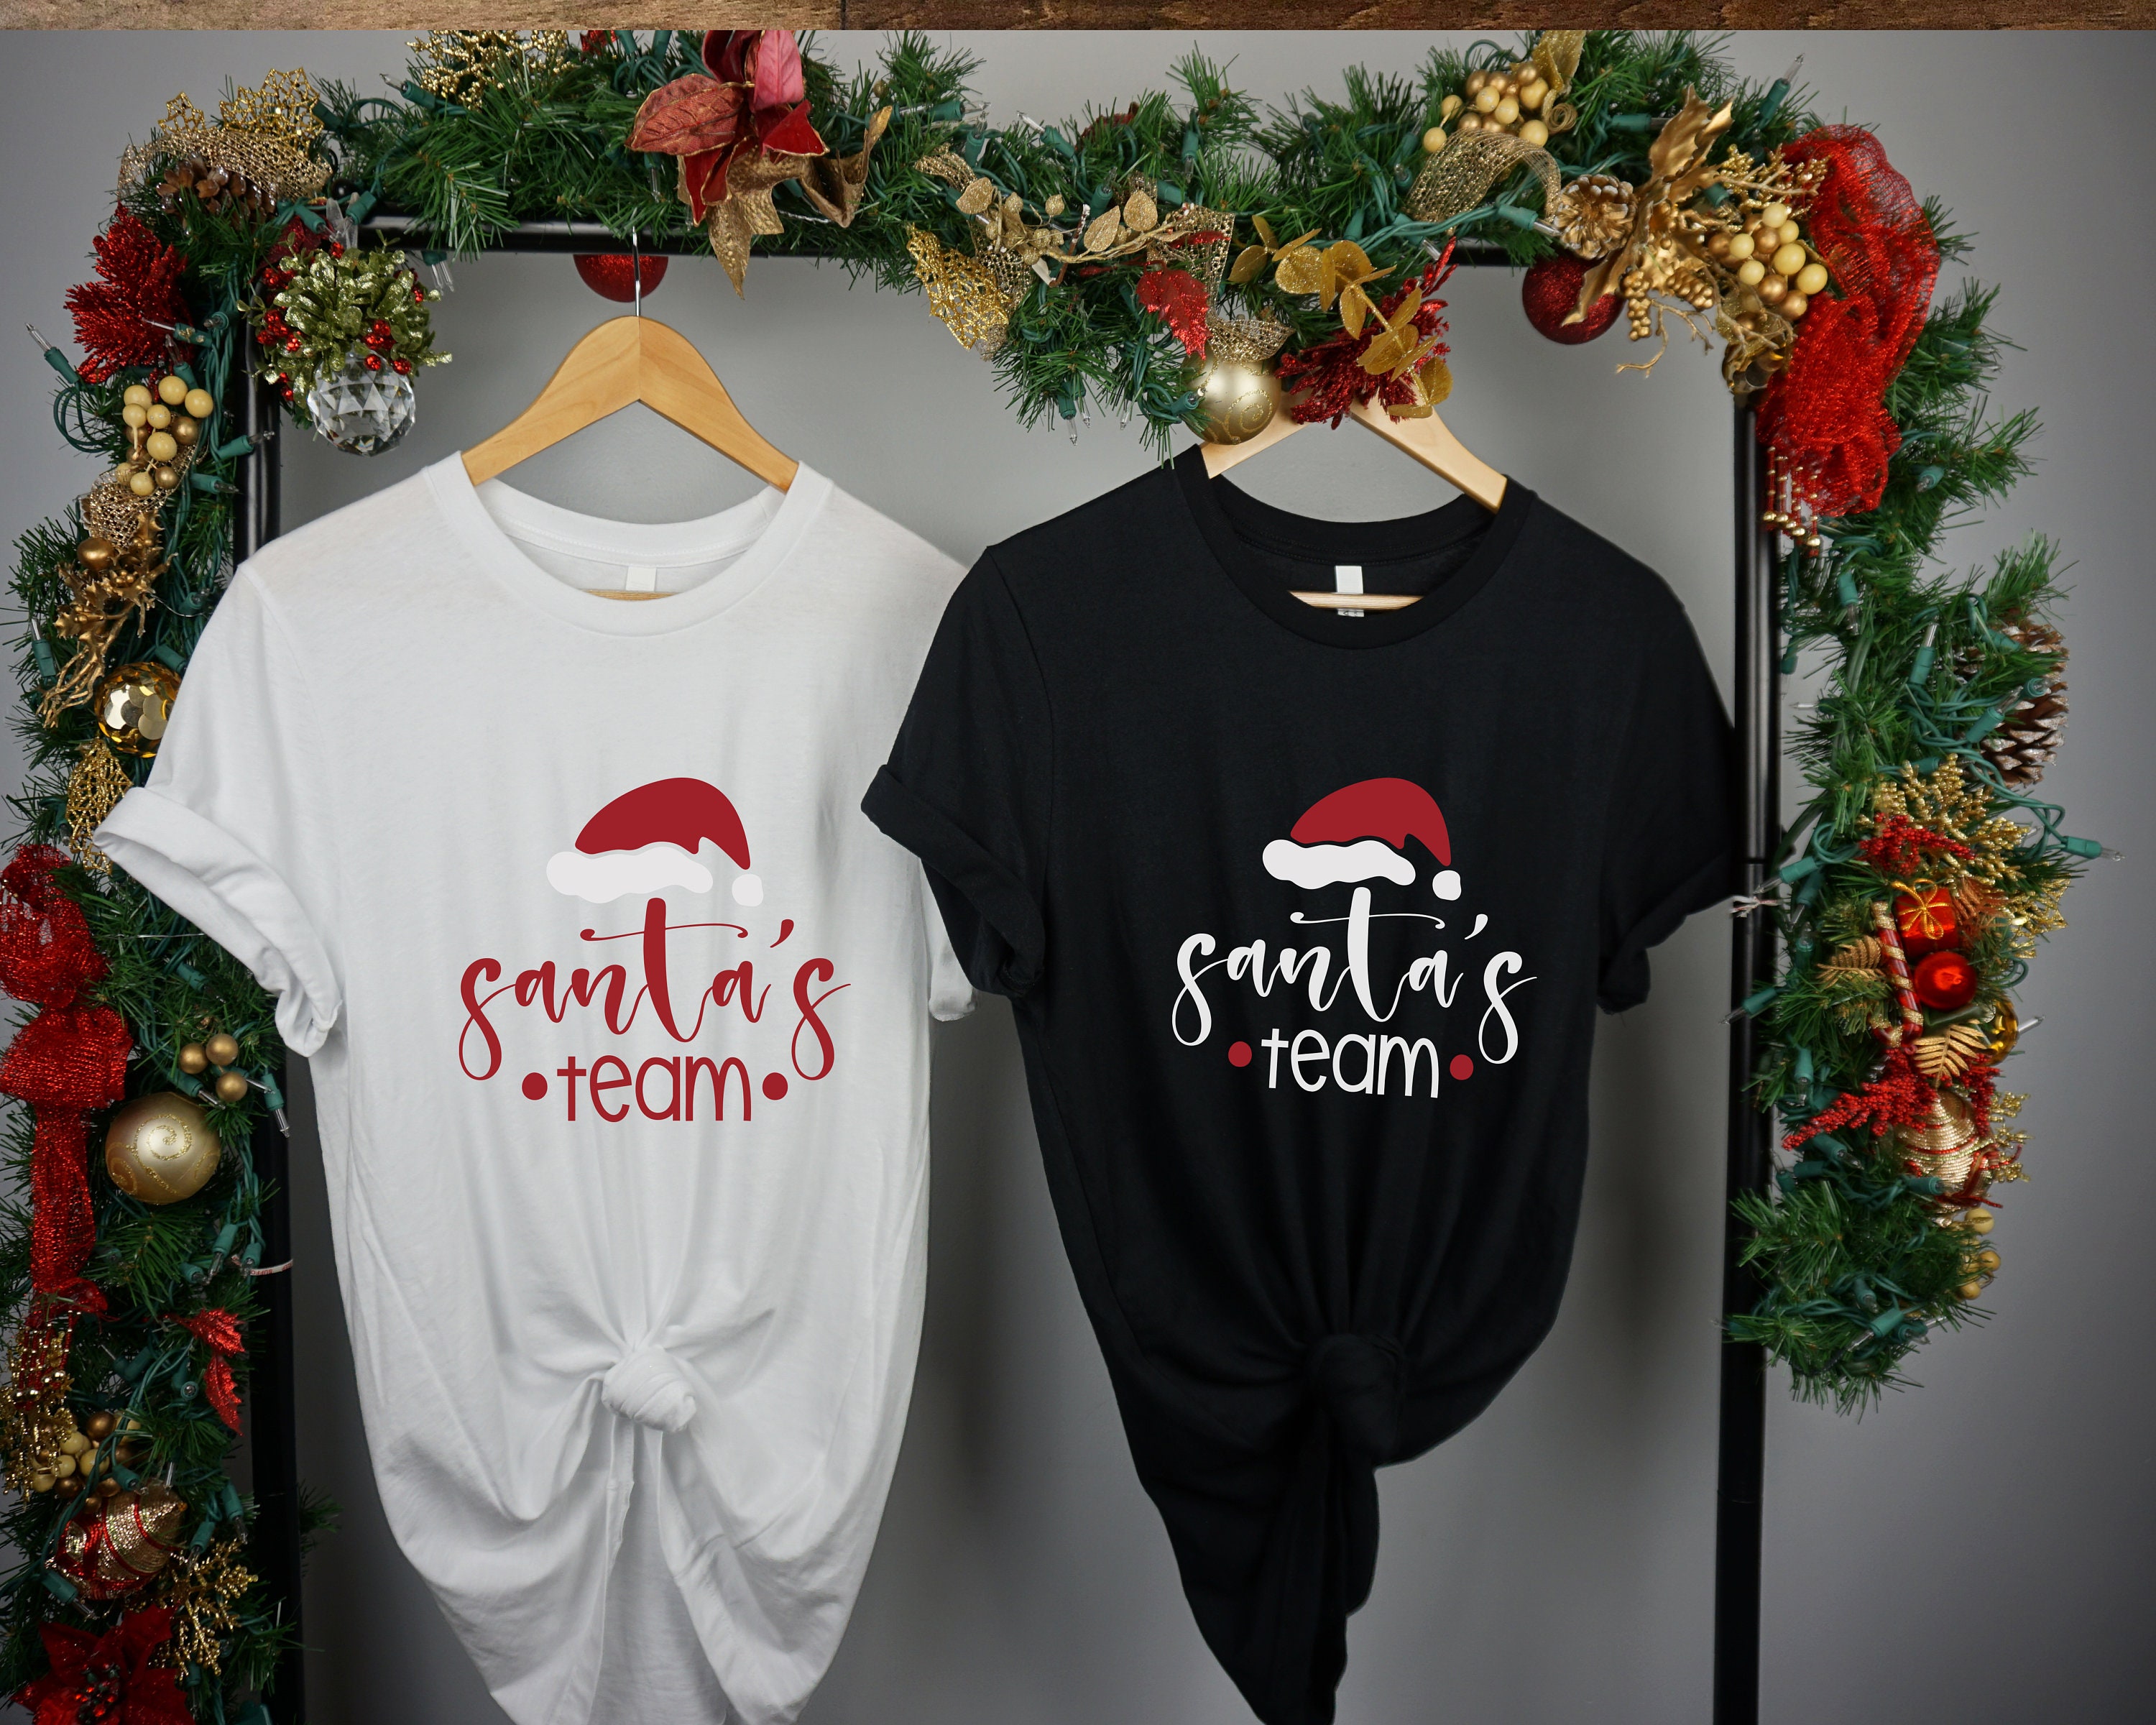 Chào mừng Giáng sinh với áo thun Team Santa Tuyệt vời! Với những thiết kế độc đáo, mẫu áo này sẽ là điểm nhấn cho bất kì buổi tiệc Giáng sinh nào. Hãy mua một chiếc cho bạn và đồng nghiệp của mình để tăng thêm không khí cuối năm đầy cảm hứng trong năm nay!